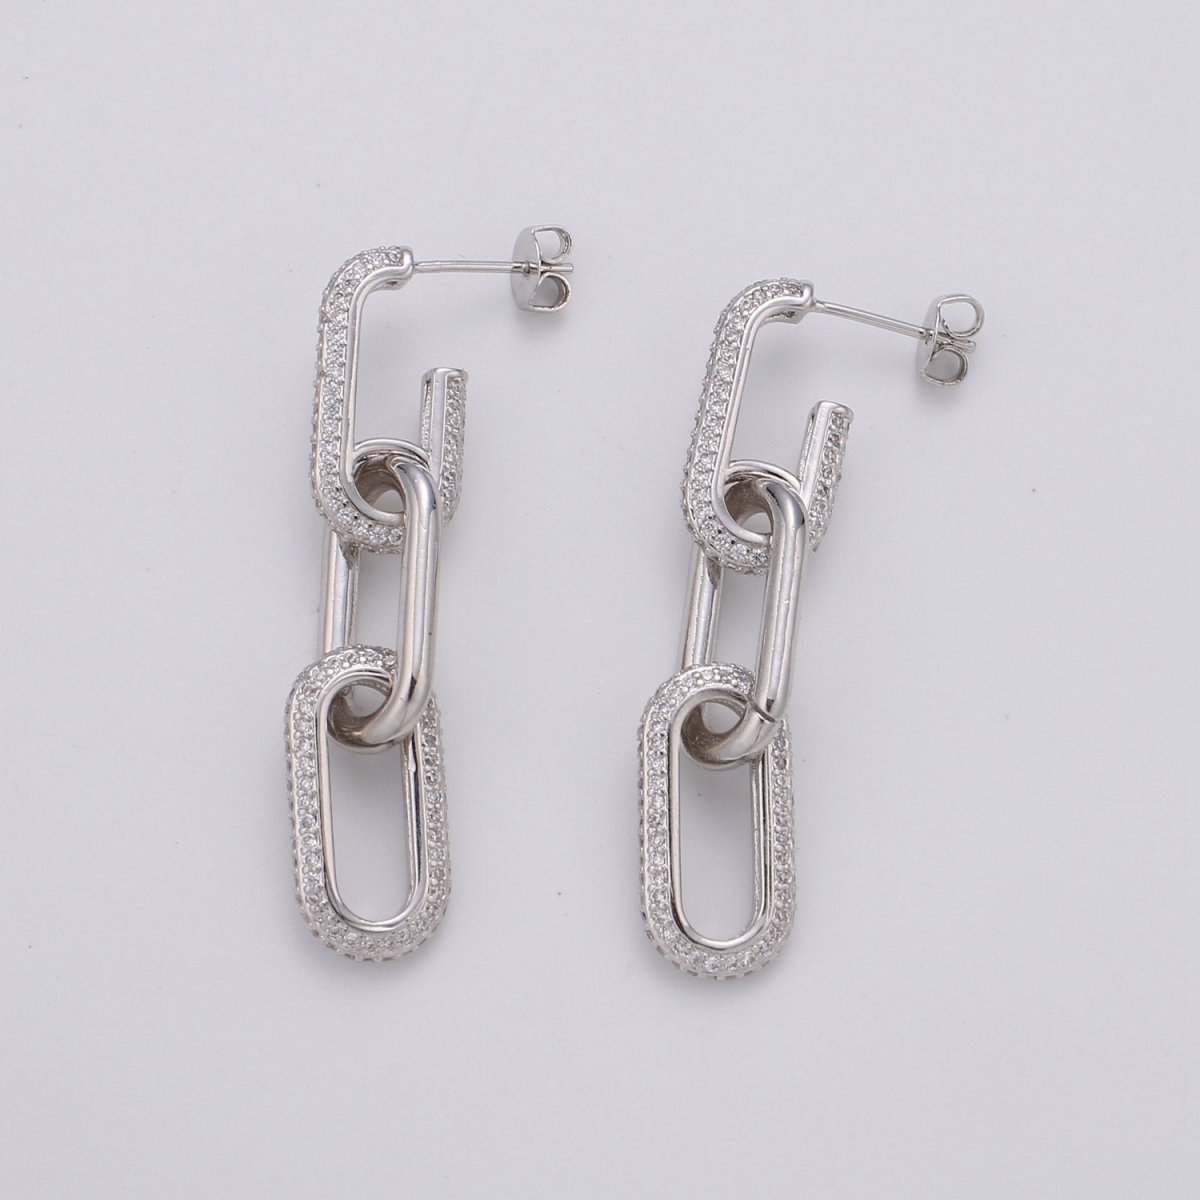 Chunky Chain Link Earrings, Gold Link Earrings, Gold Drop Earrings, Gold Dangle Earrings, 24k Gold Filled Earrings, Micro Pave CZ Earrings K-579 K-580 - DLUXCA